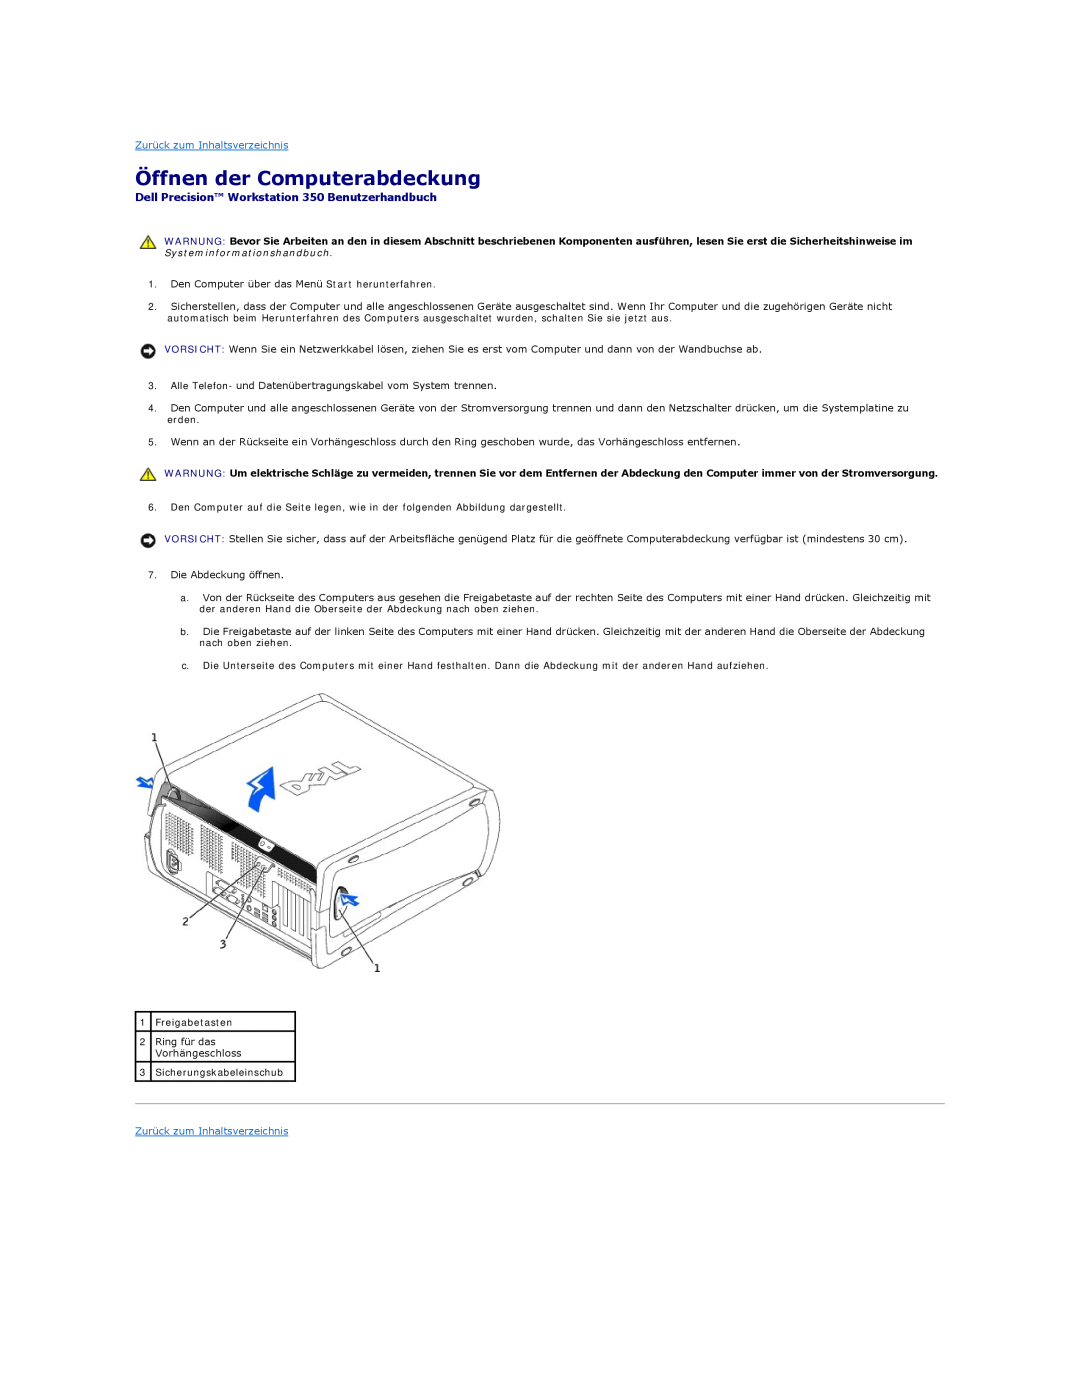 Dell manual Öffnen der Computerabdeckung, Dell Precision Workstation 350 Benutzerhandbuch, Zurück zum Inhaltsverzeichnis 